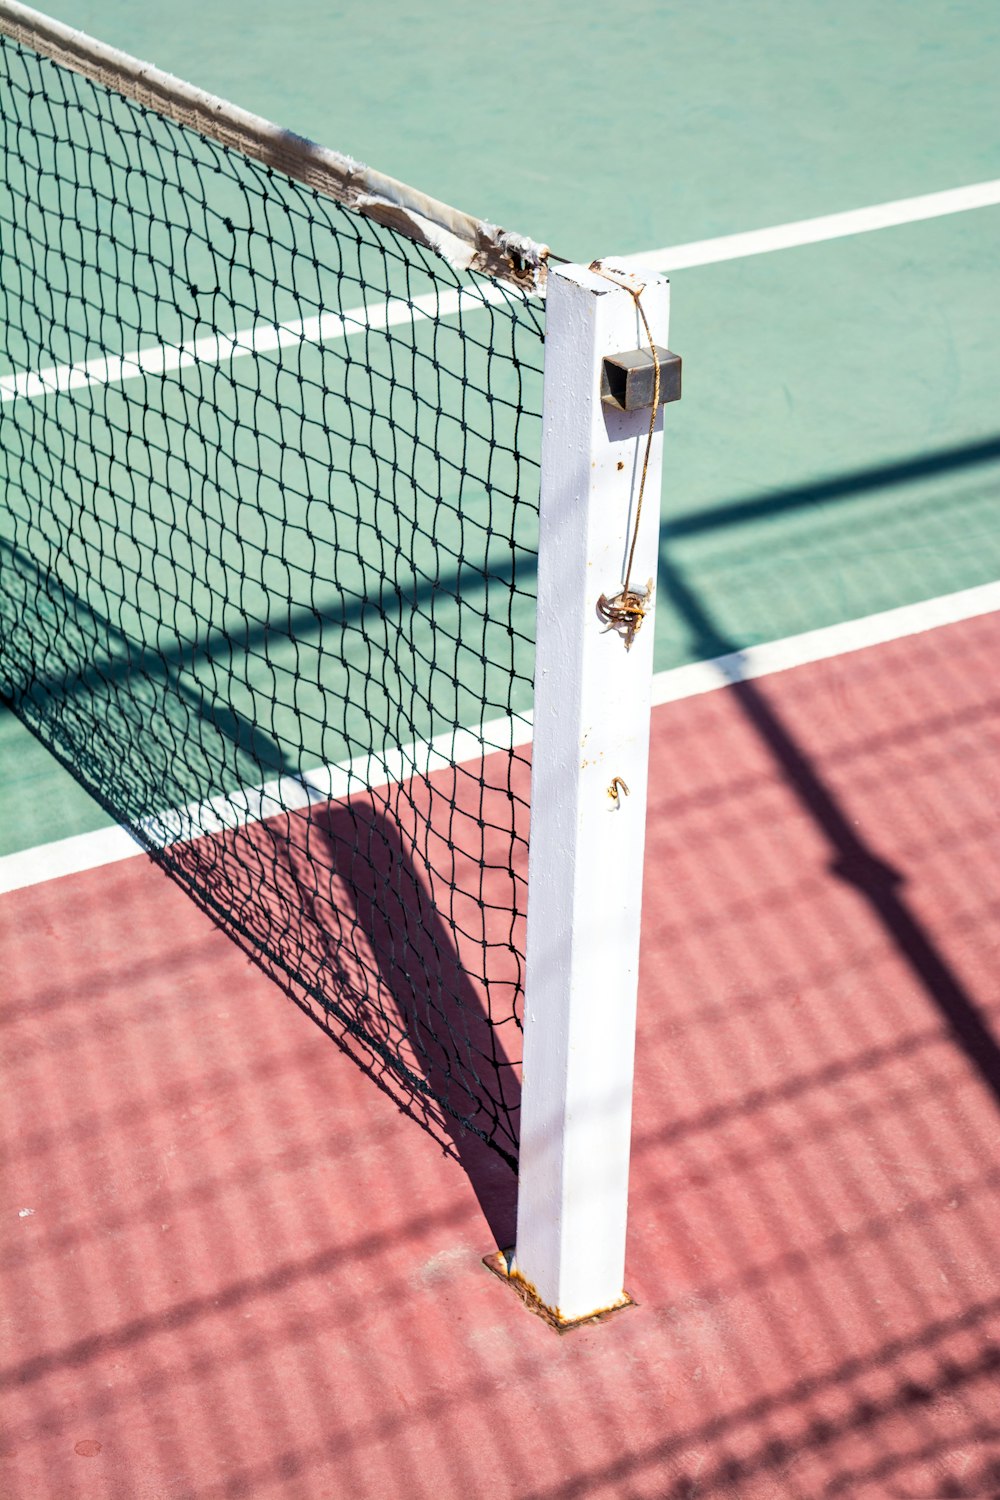 Eine fokussierte Aufnahme eines Pfostens auf einer Seite eines Tennisnetzes.